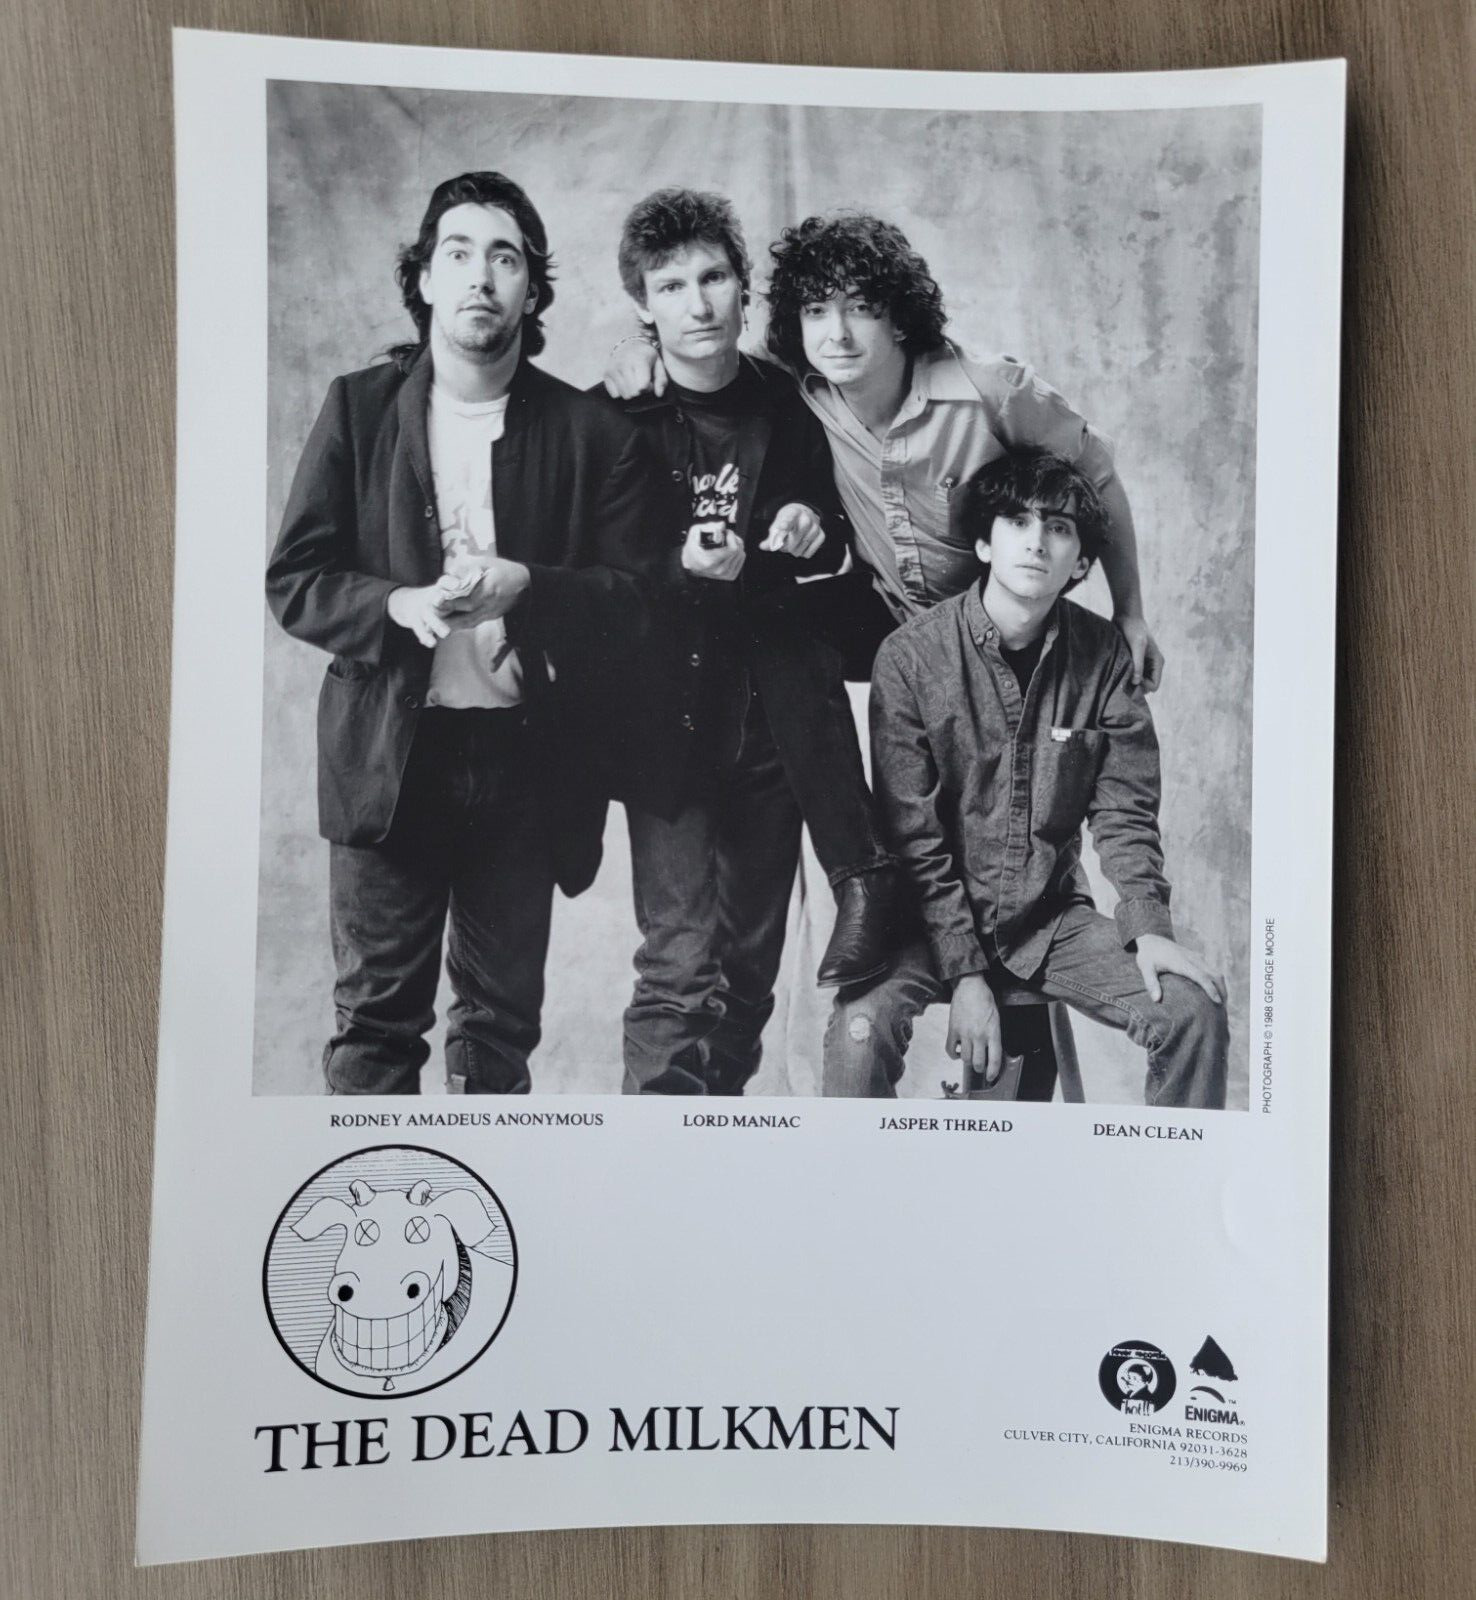 The Dead Milkmen Enigma Records 1988 Press Photo  American punk rock band